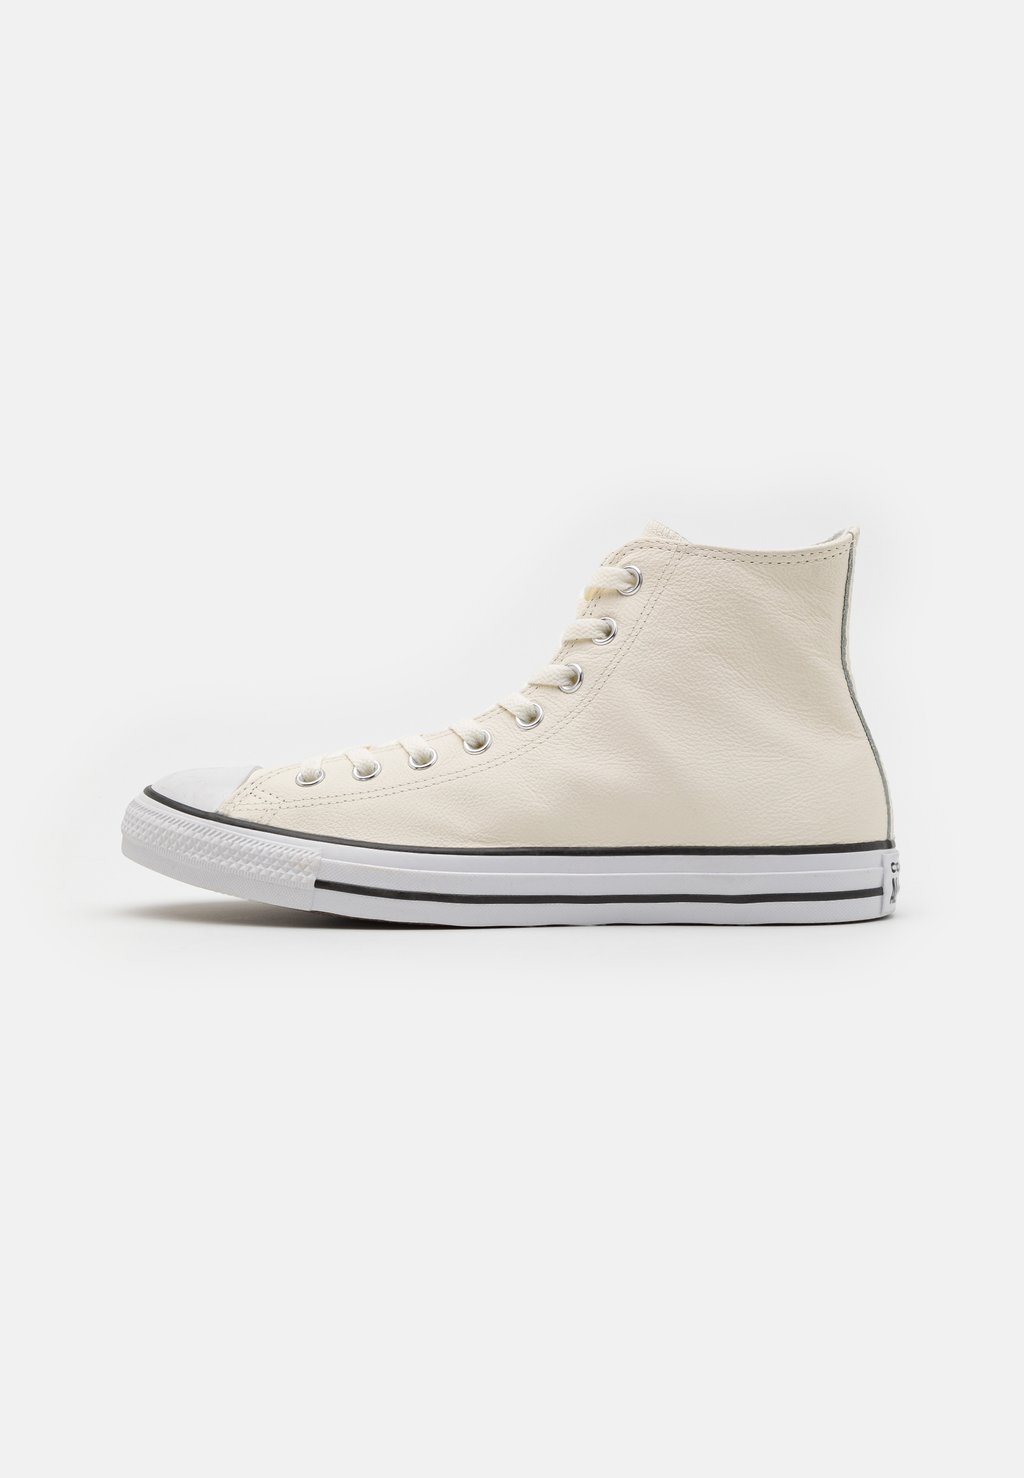 цена Высокие туфли Converse CHUCK TAYLOR ALL STAR SEASONAL COLOR UNISEX, цвет egret/vintage white/white